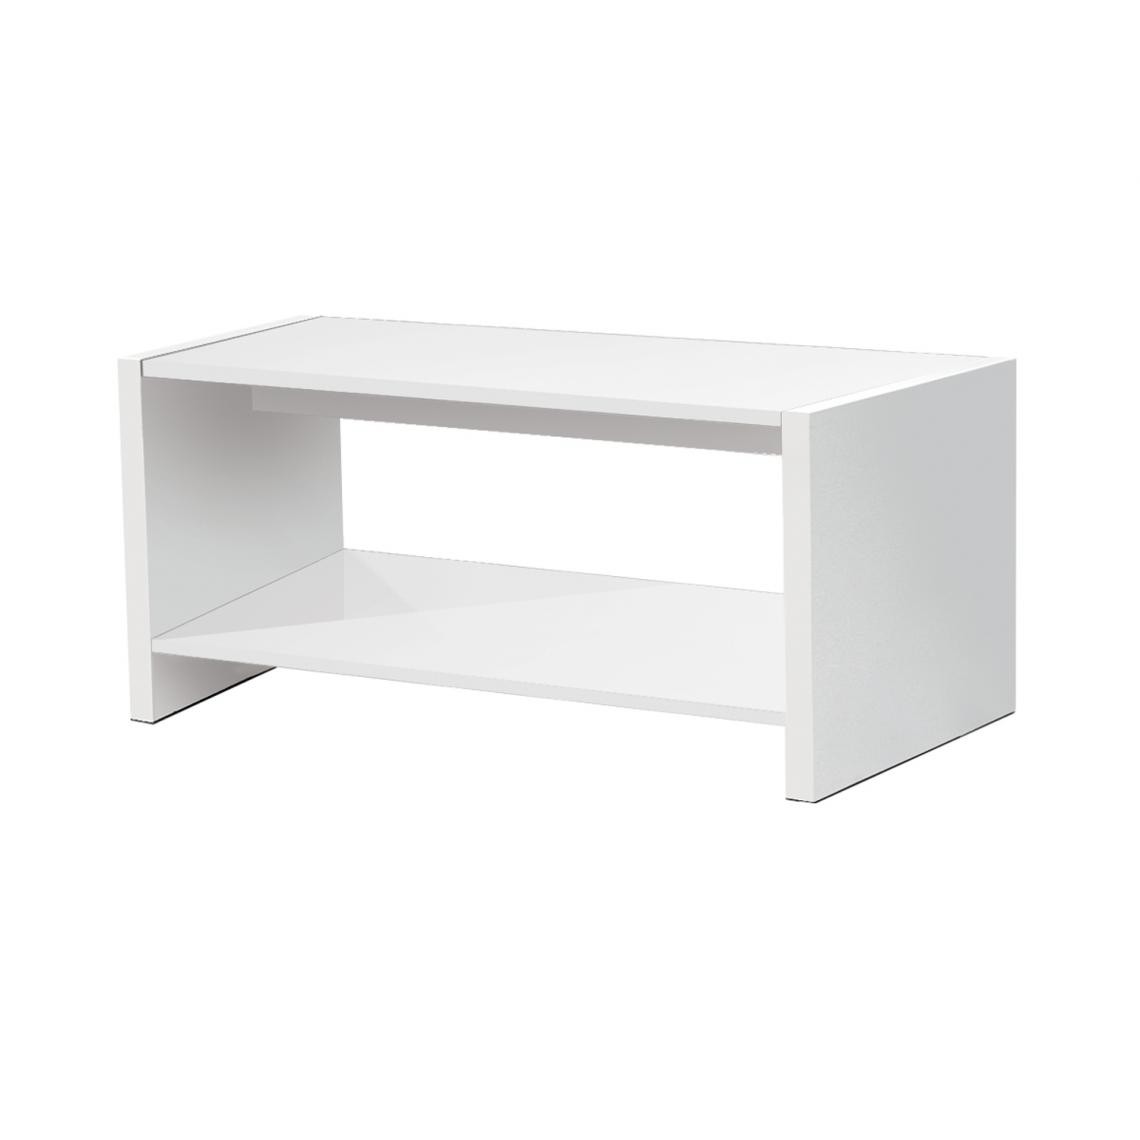 Pegane - Table basse coloris Blanc - longueur 77 x profondeur 40 x hauteur 39 cm - Tables basses